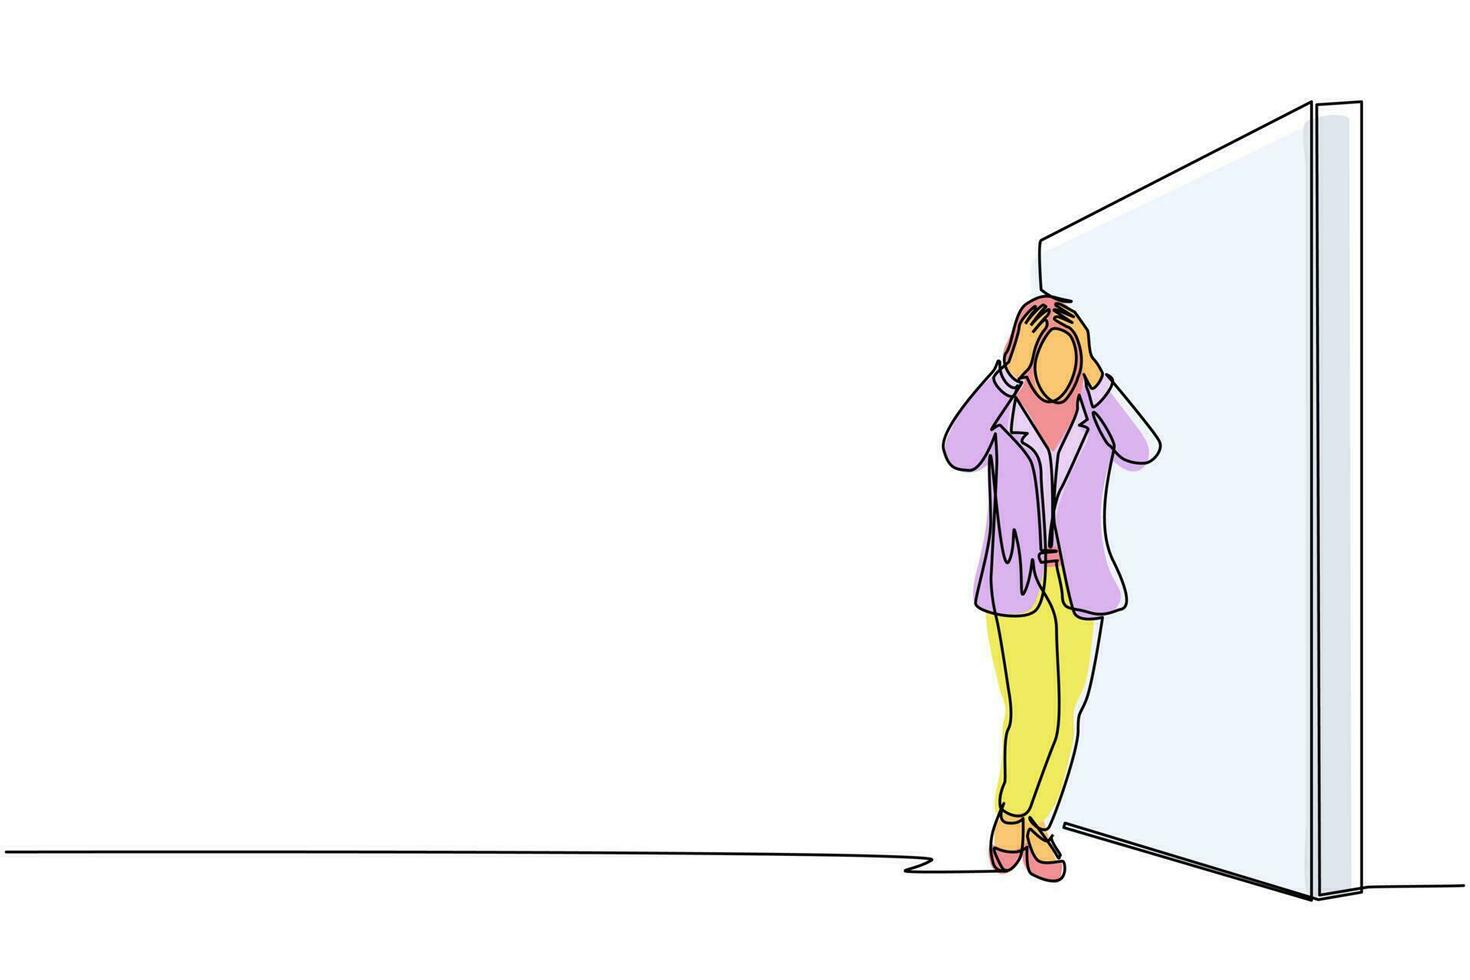 una sola línea continua dibujando a una mujer de negocios árabe de pie y confundida frente a enormes barreras de pared de ladrillo. escena por decisión comercial incorrecta, error, punto muerto. vector de diseño gráfico de dibujo de una línea